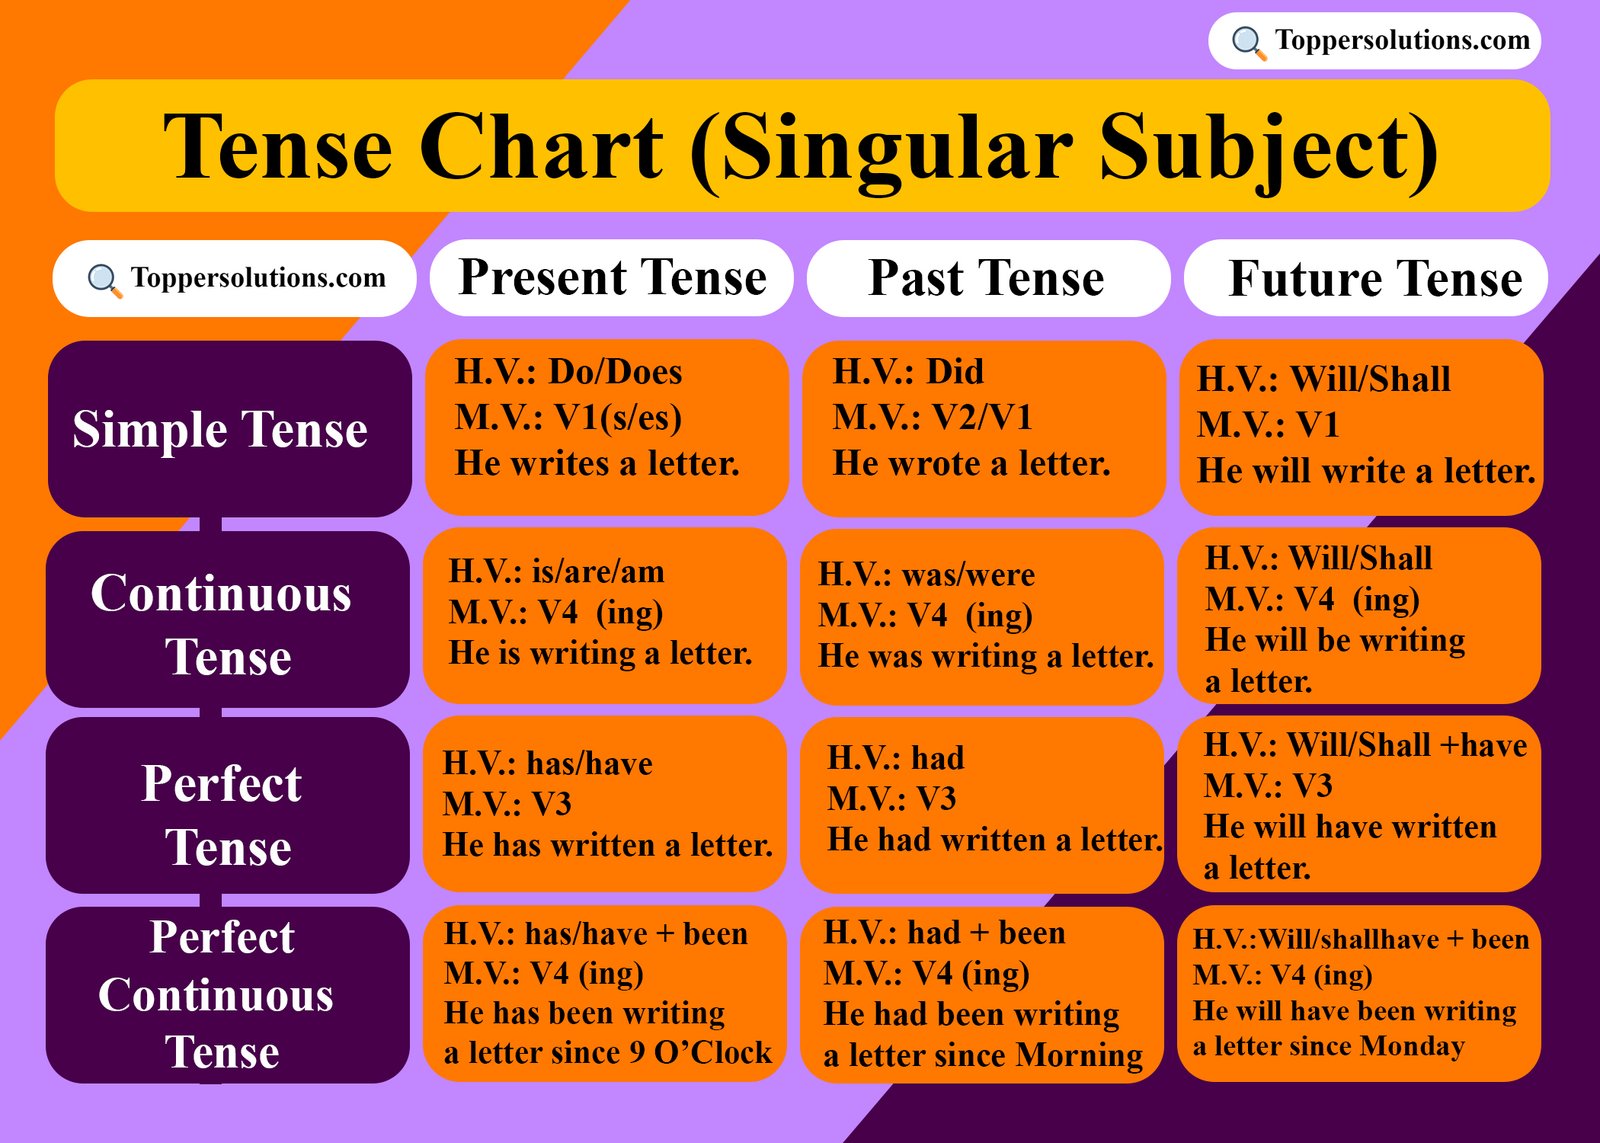 Tense chart (singular subject)